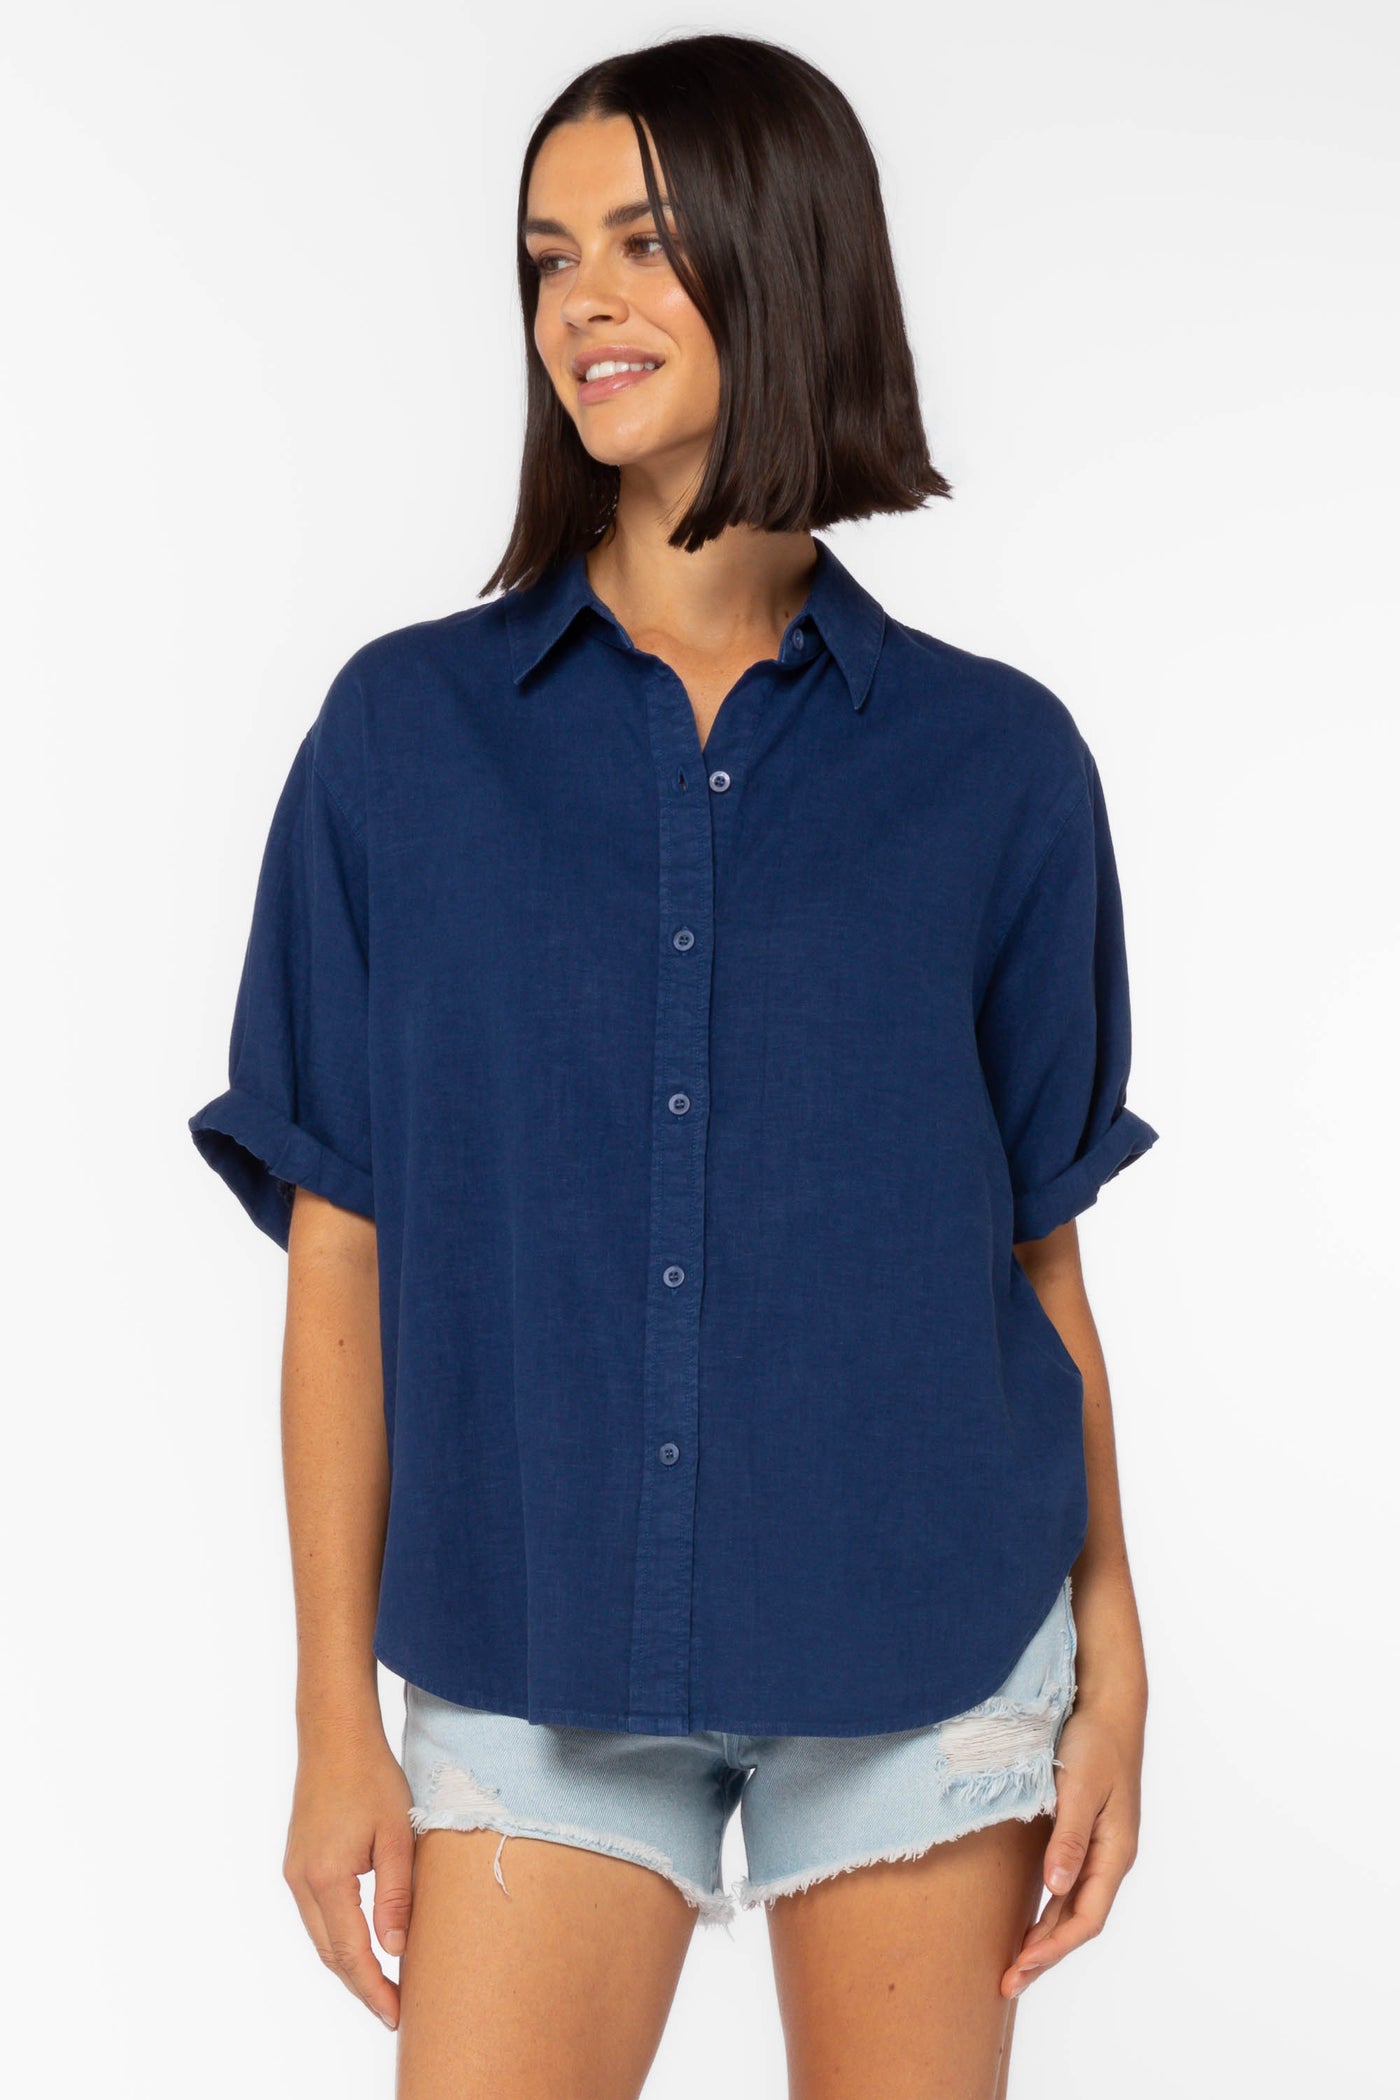 Barley Blue Shirt - Tops - Velvet Heart Clothing